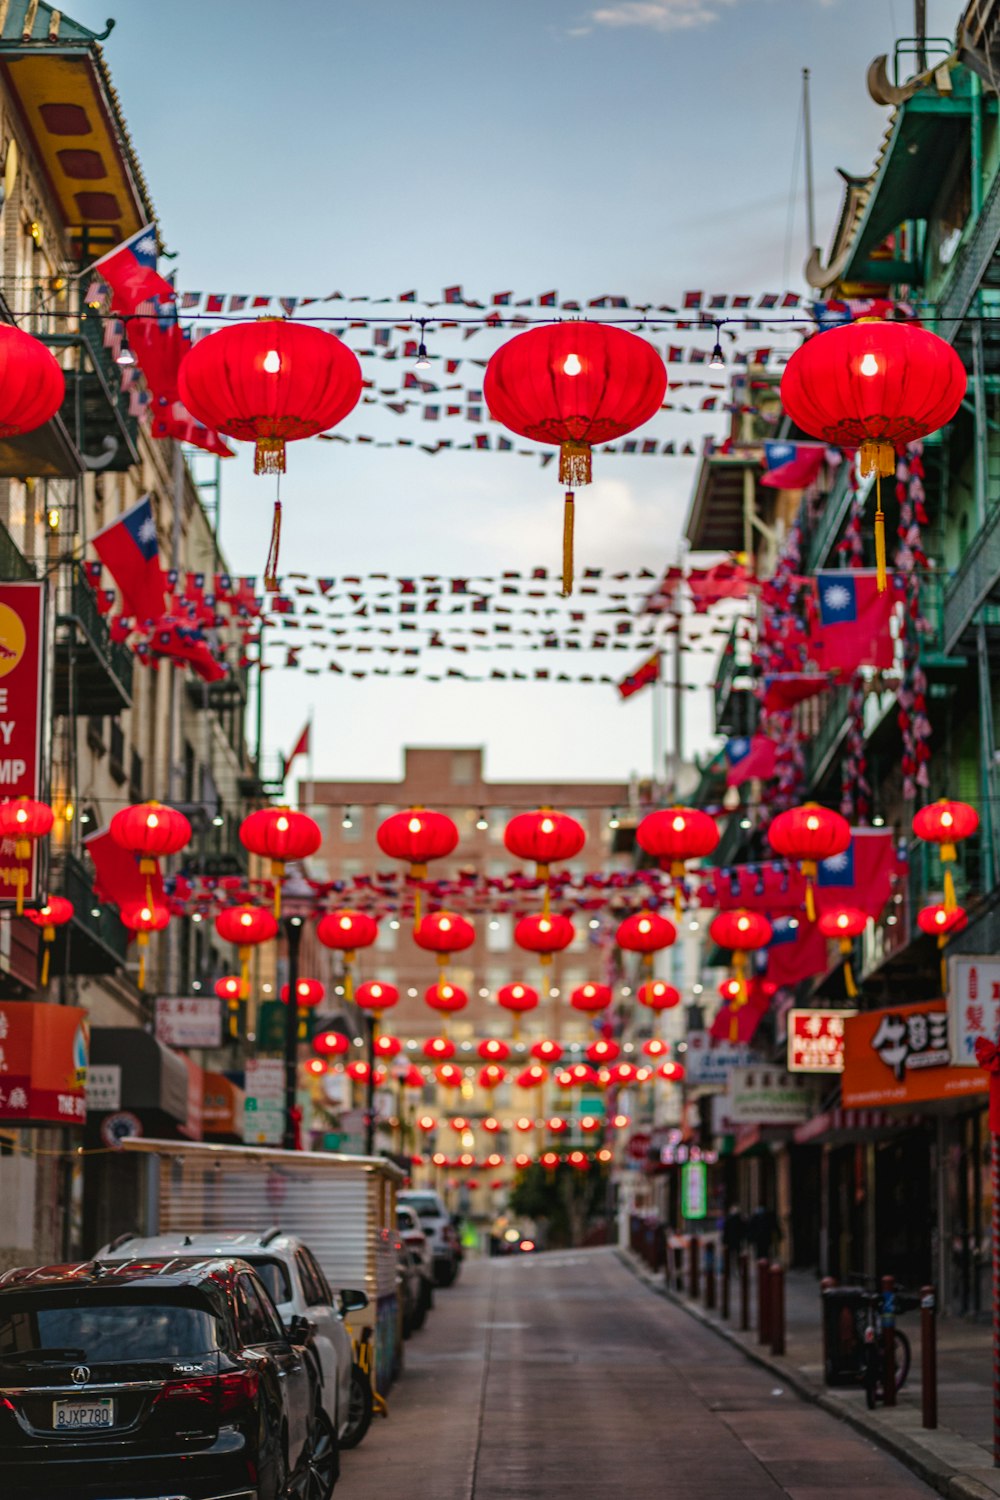 Une rue bordée de nombreuses lanternes rouges